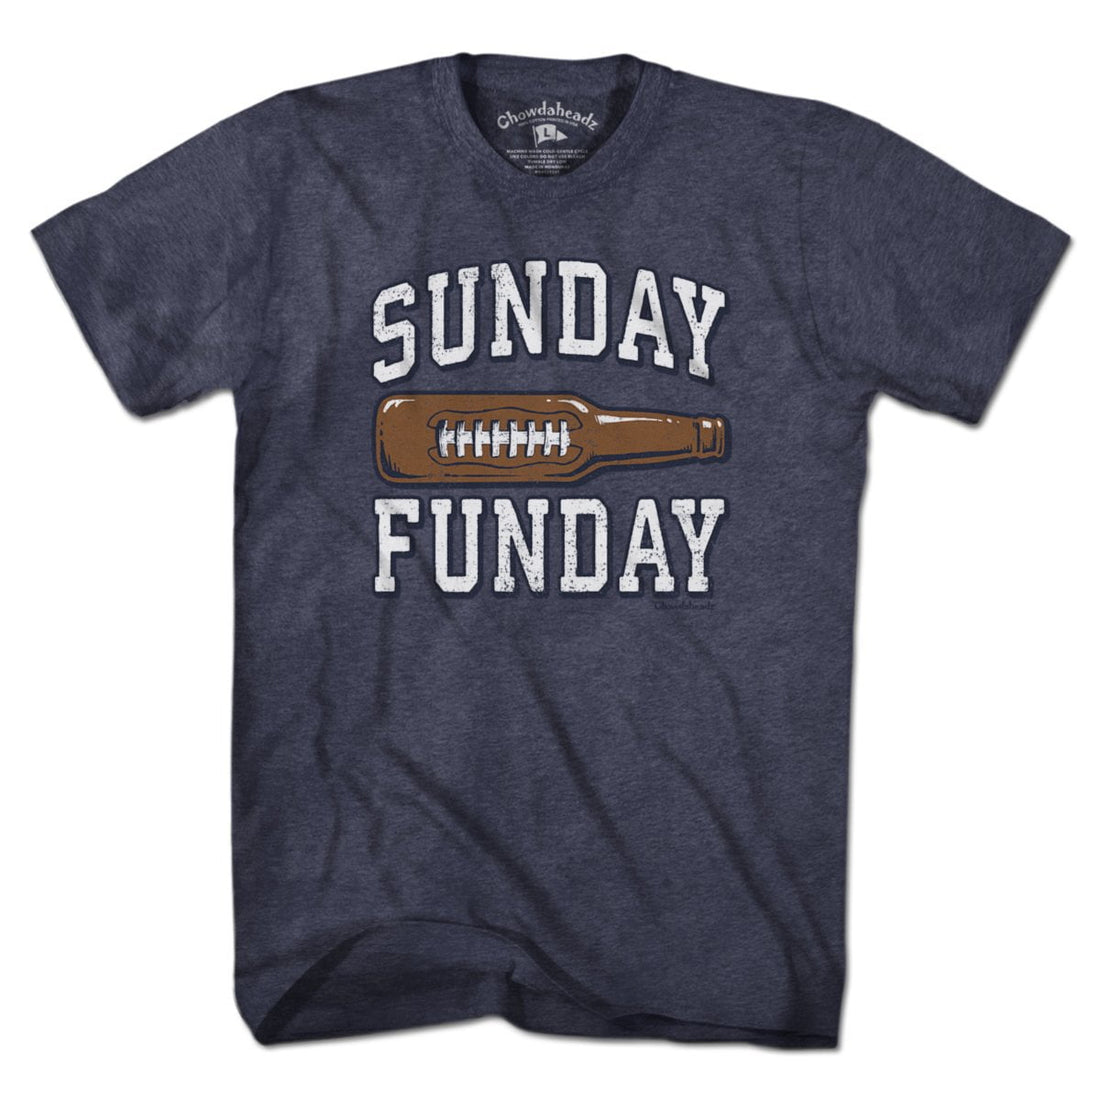 Sunday Funday Footbottle T-Shirt - Chowdaheadz